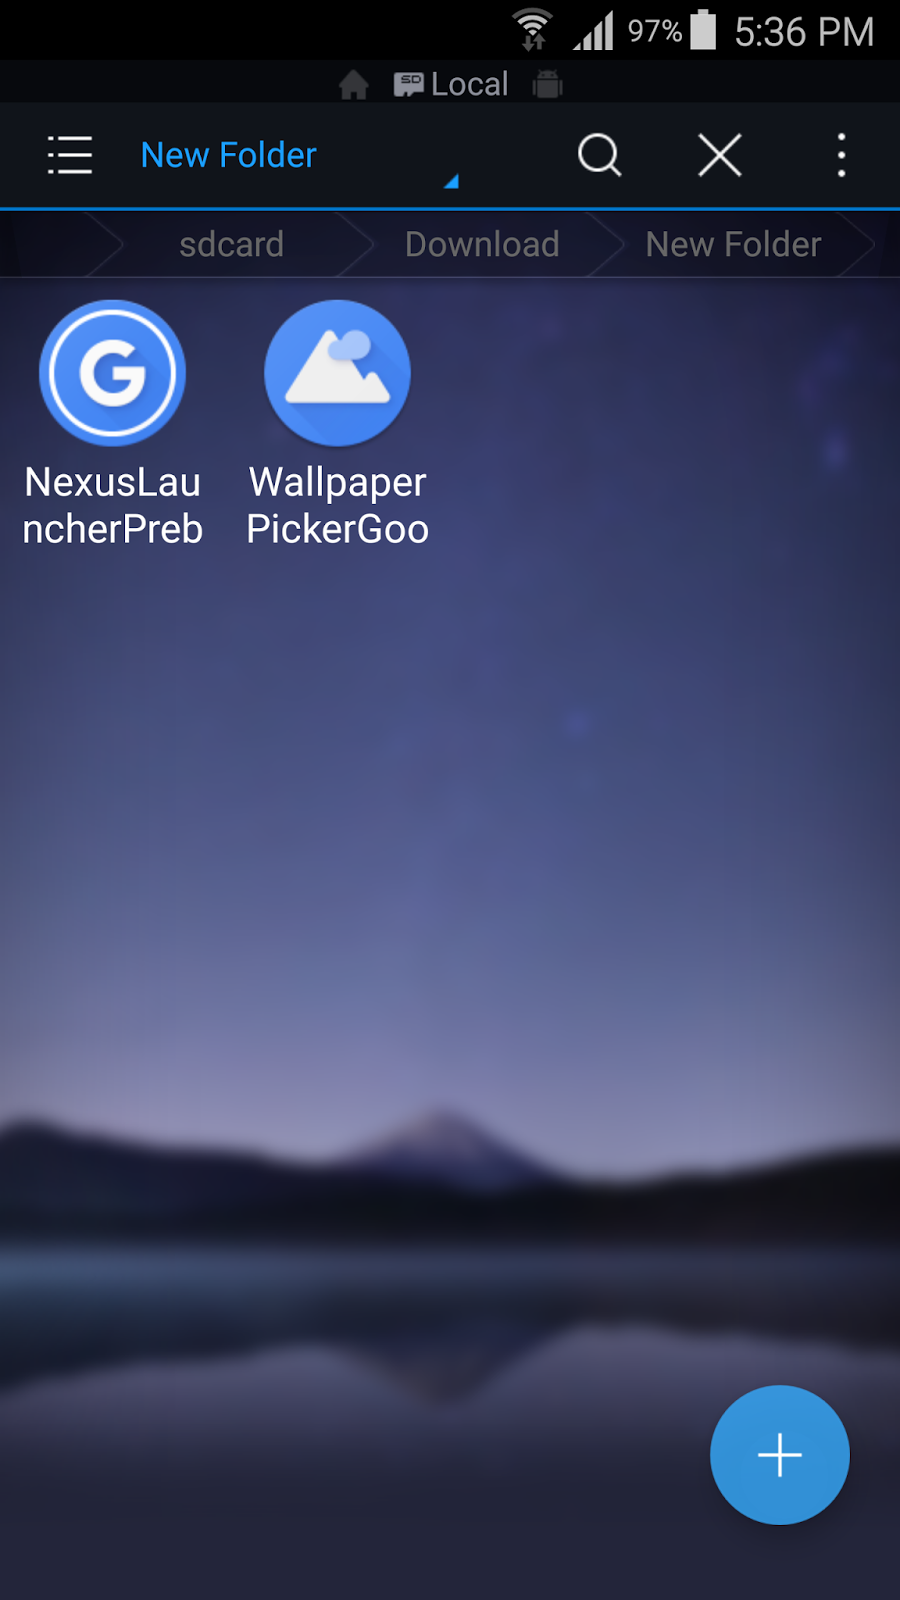 حمل لانشر جوجل الجديد بكسل لانشر Pixel Launcher | بحرية درويد